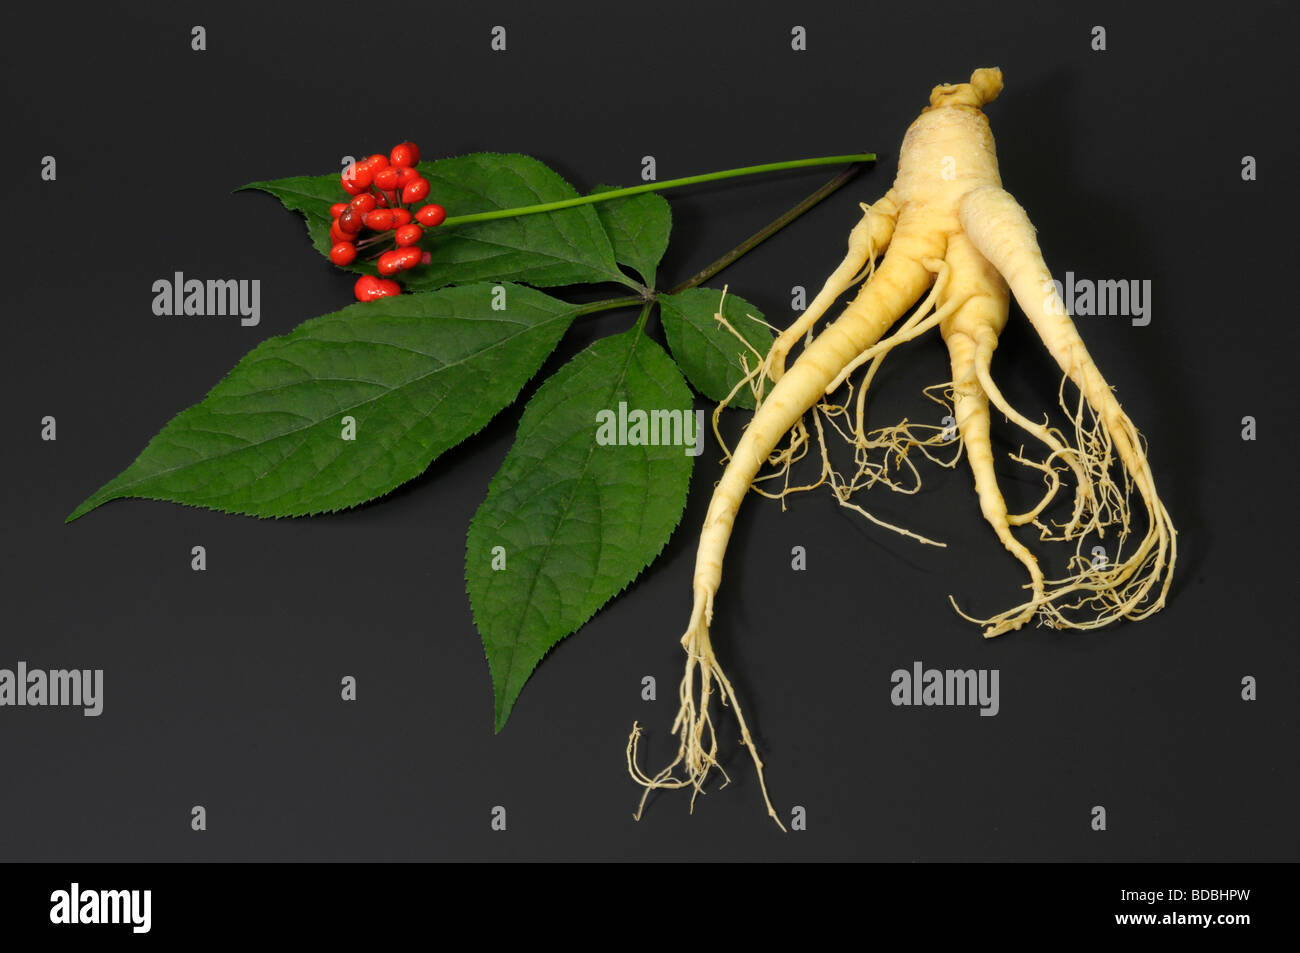 Ginseng (Panax Ginseng). Anordnung der Frucht Blatt und Wurzel, Studio Bild Stockfoto